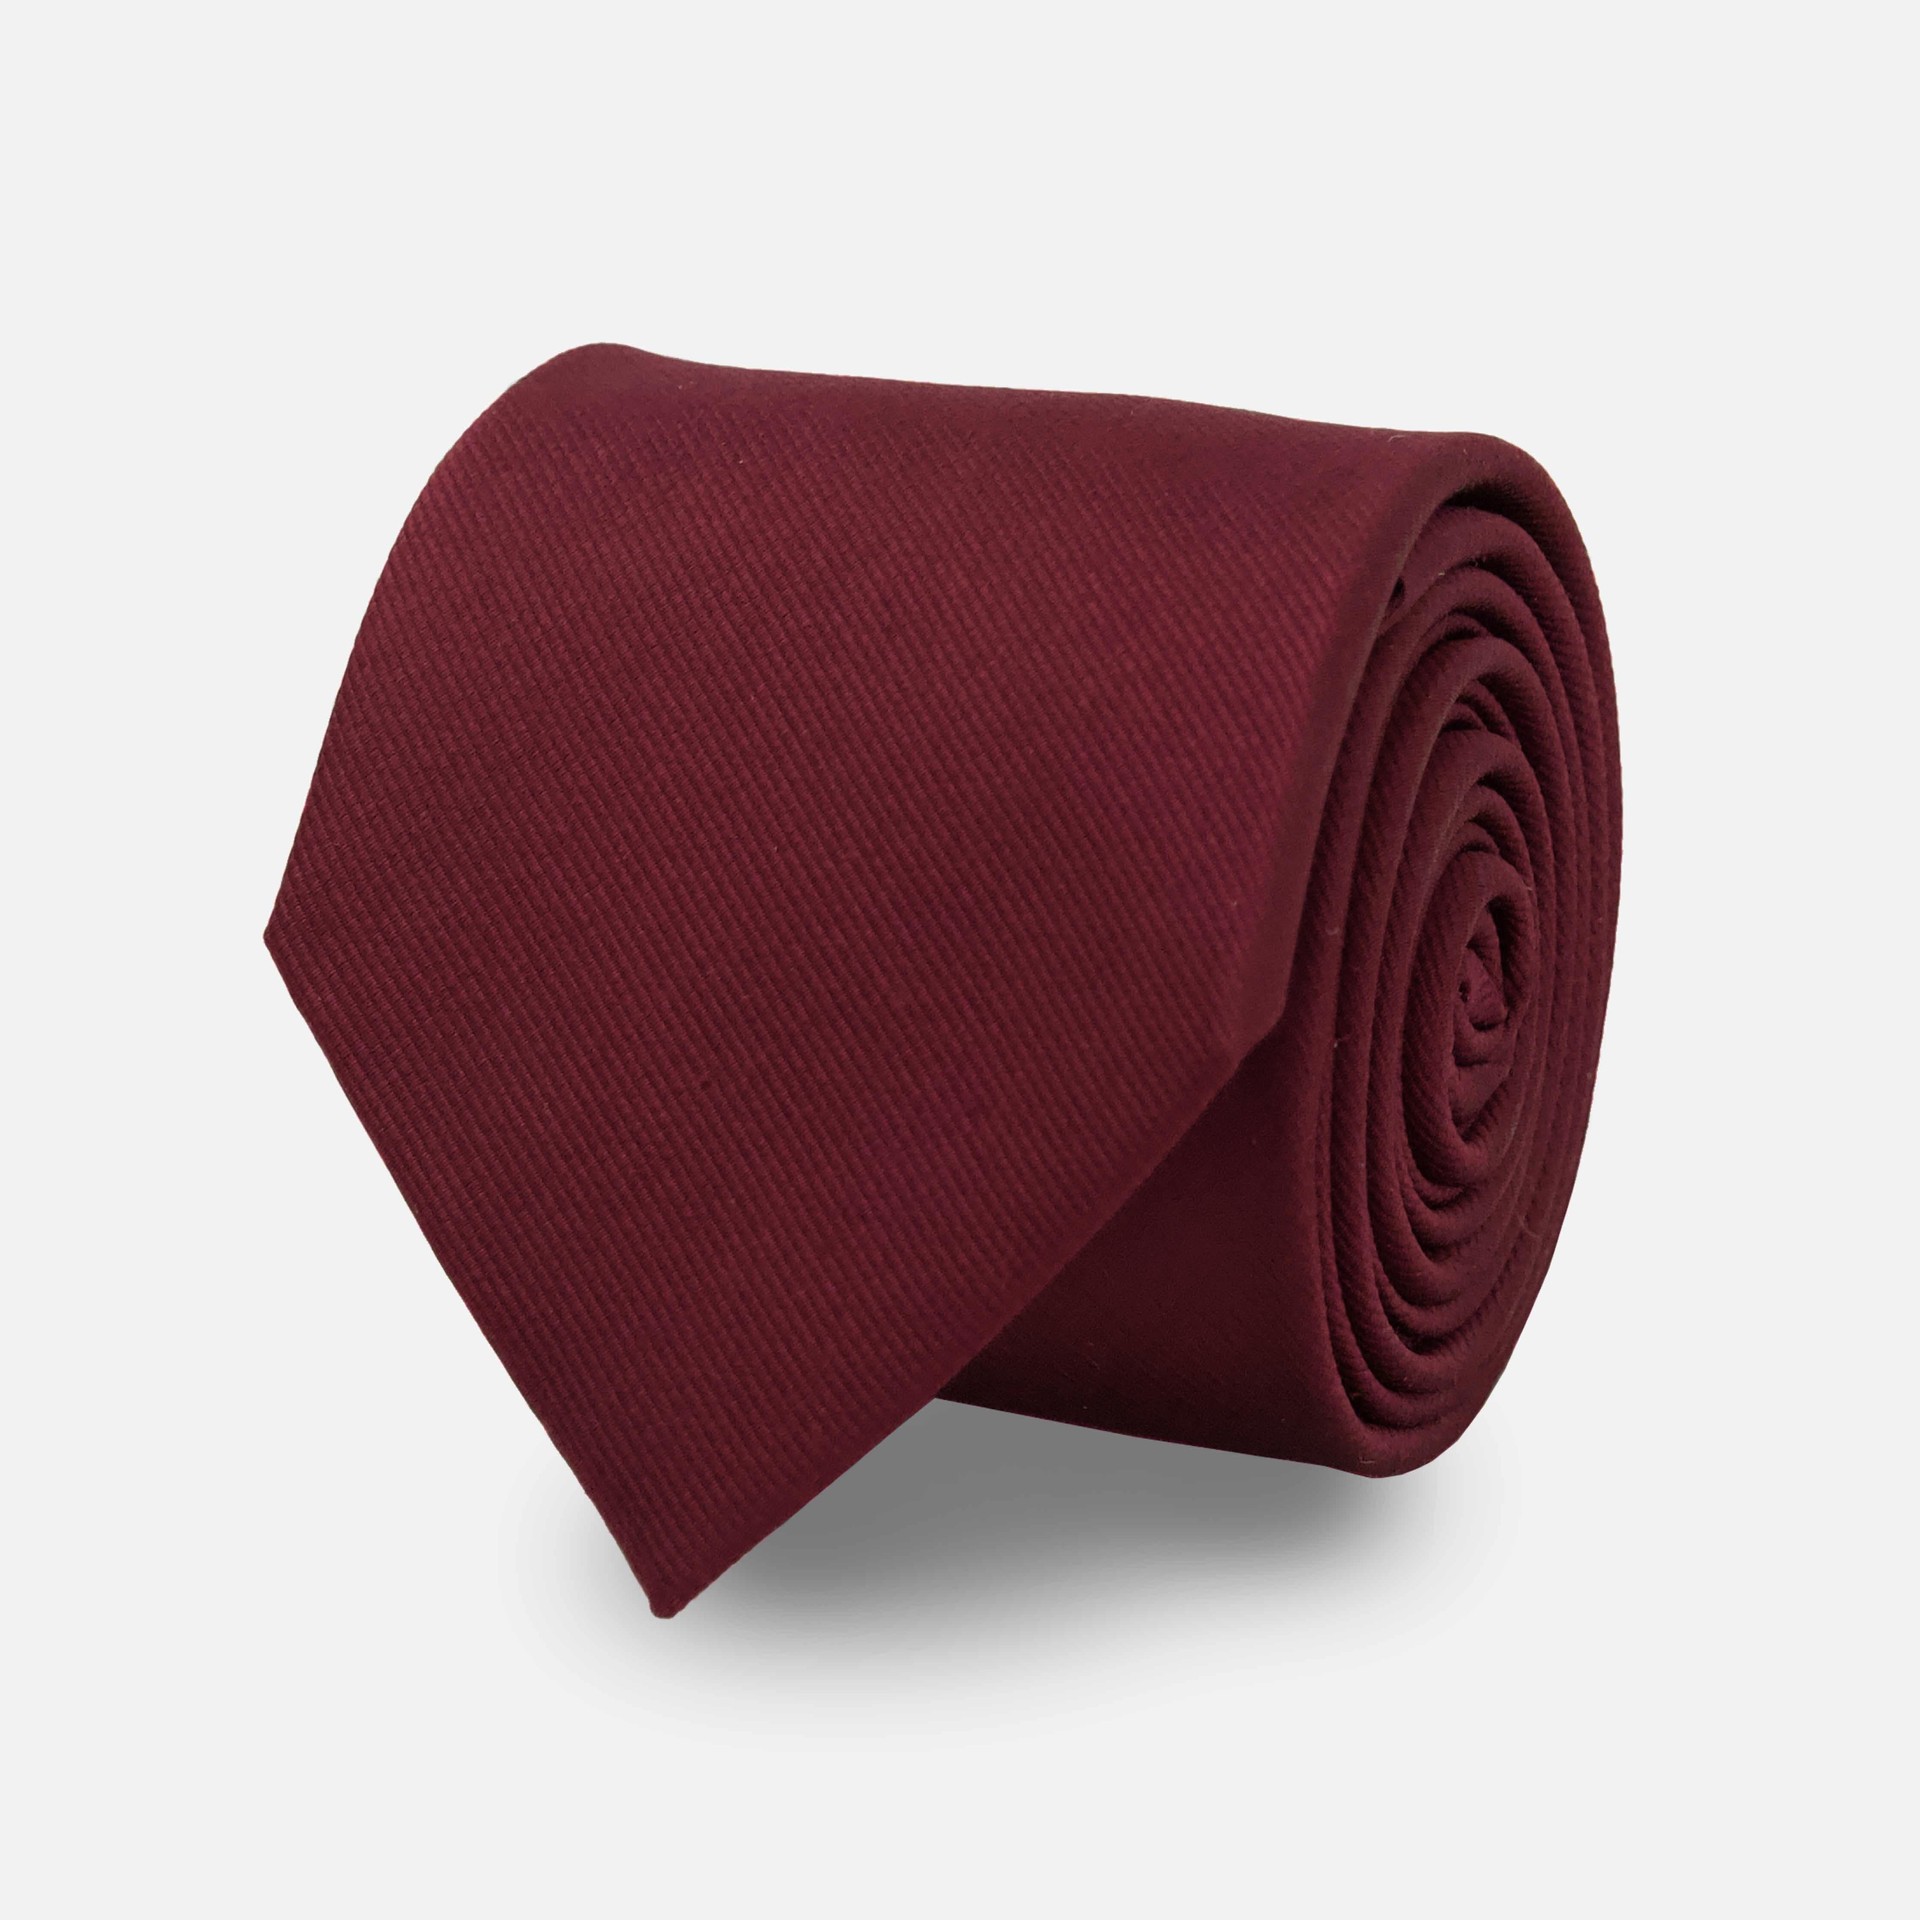 Stylish Necktie